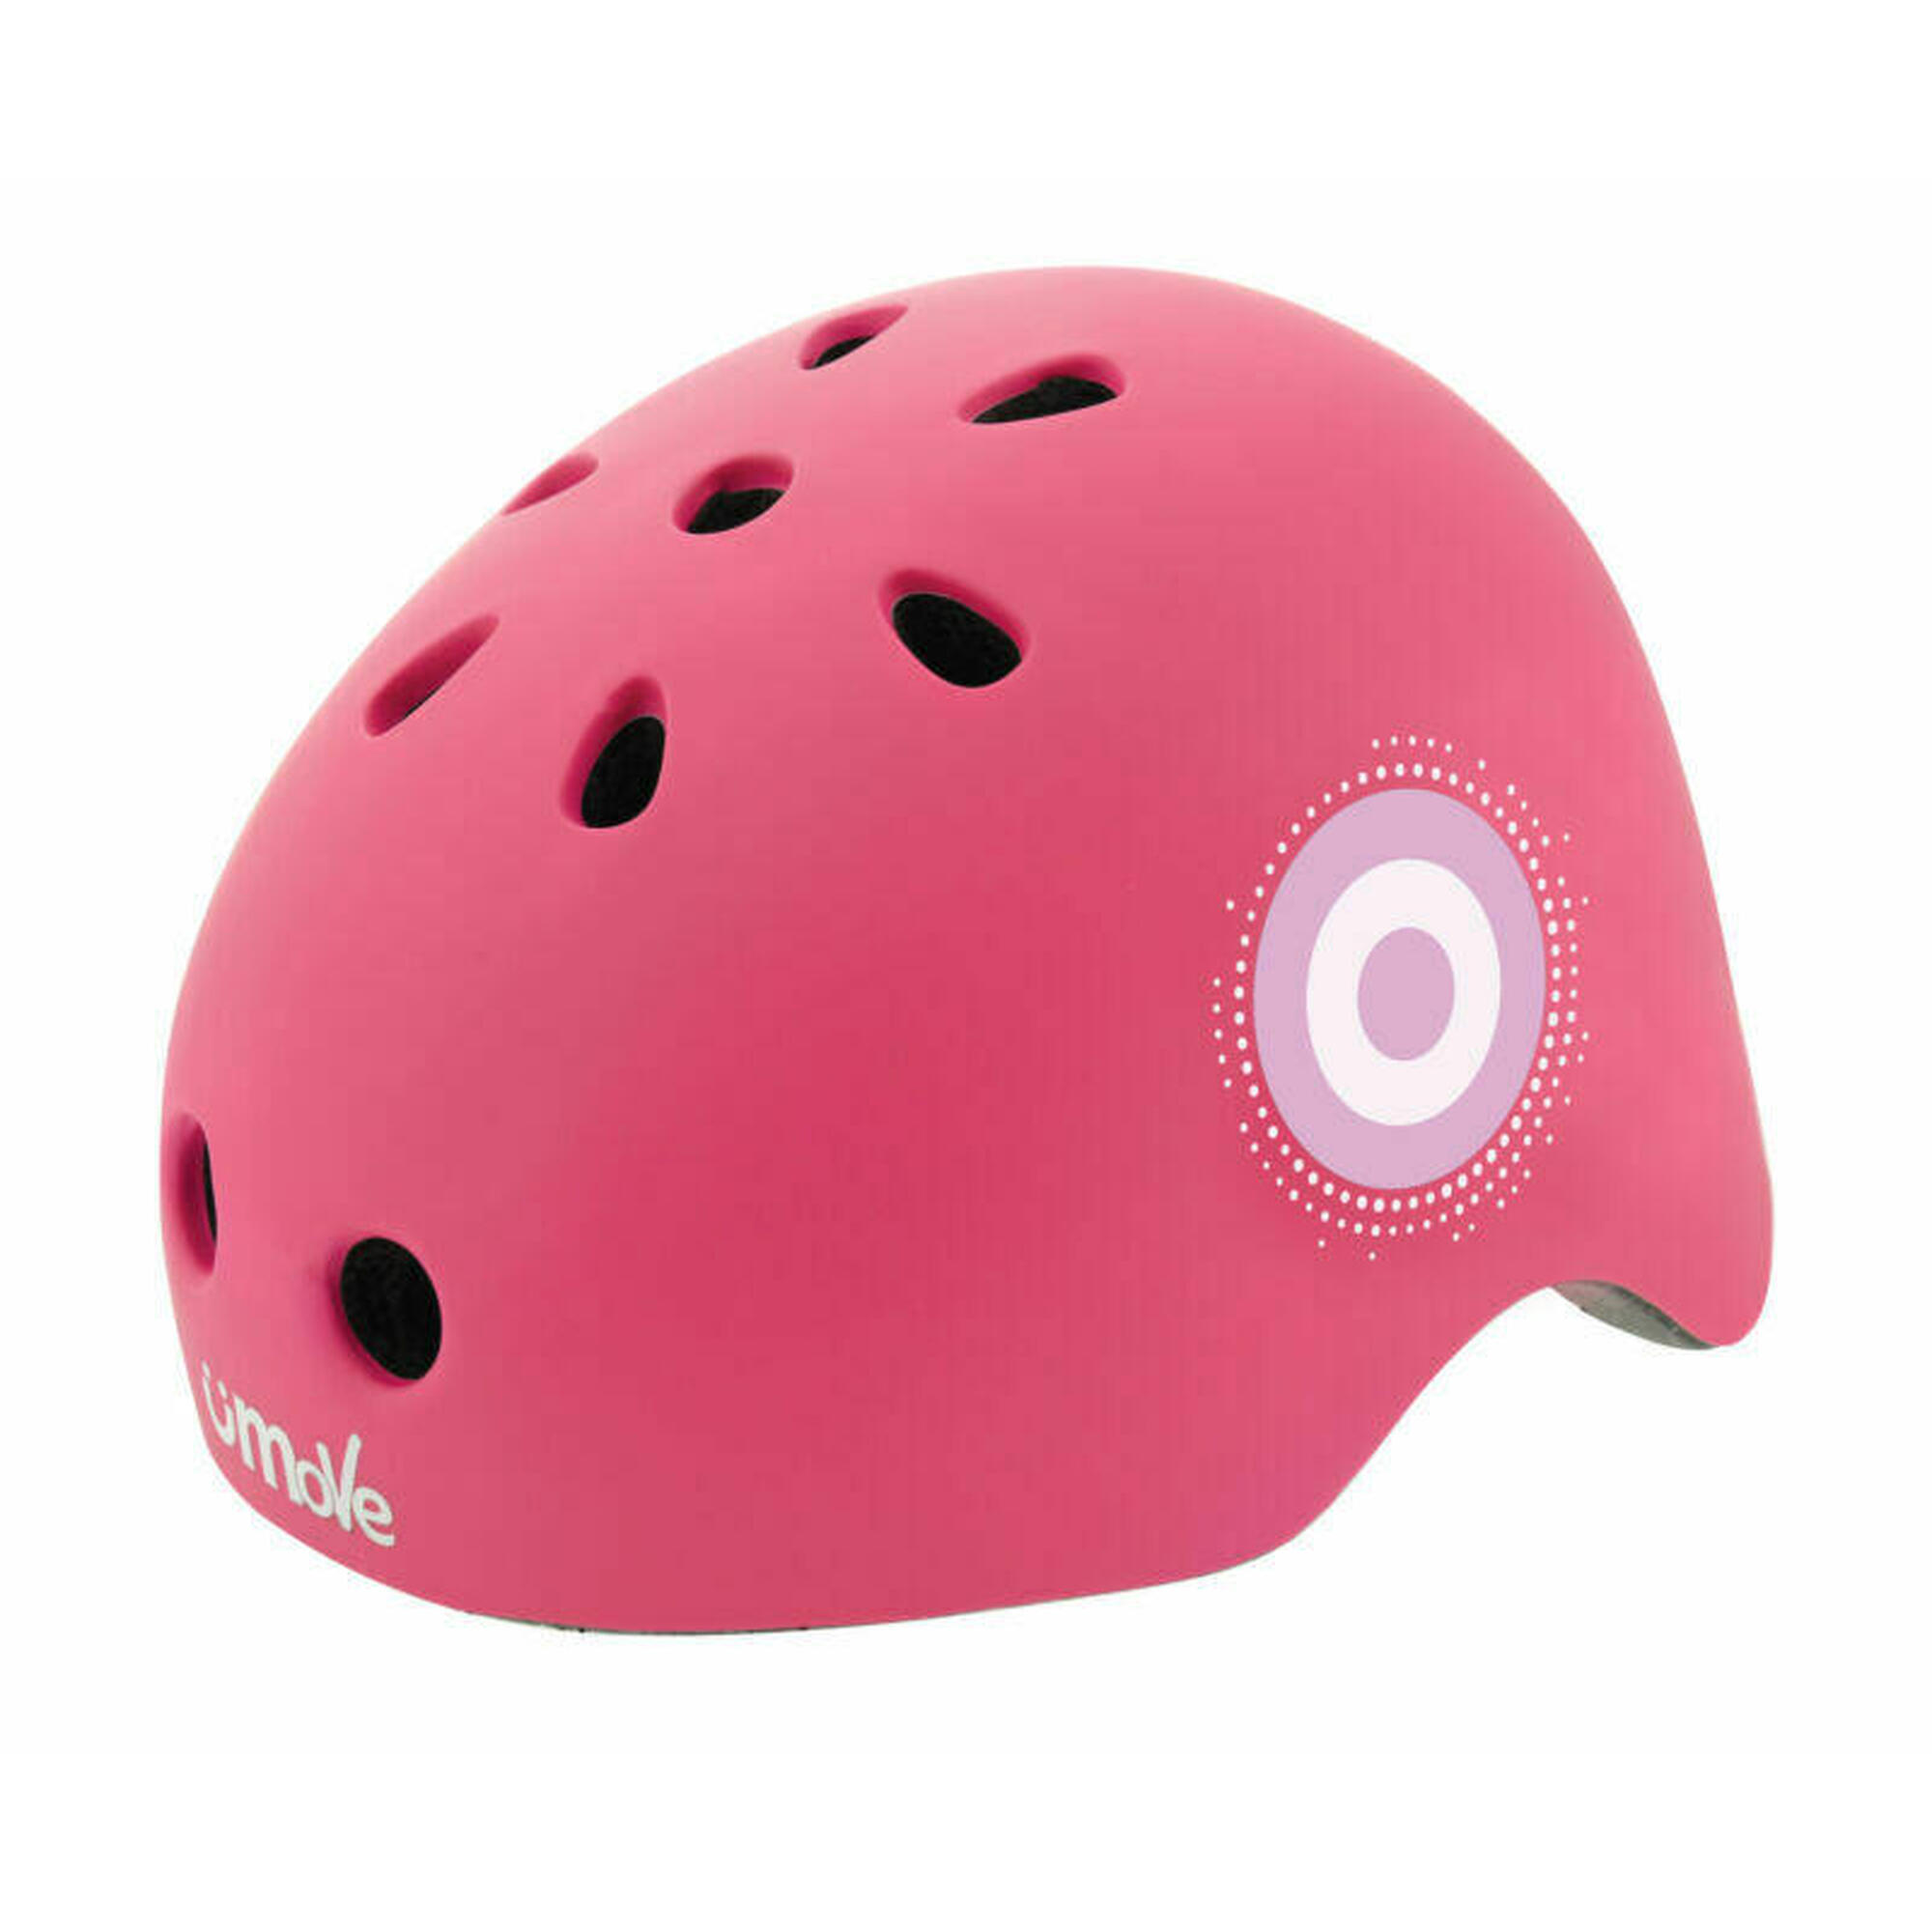 Neon Ramp Kids Bike Safety Helmet, 48-52cm 2/3